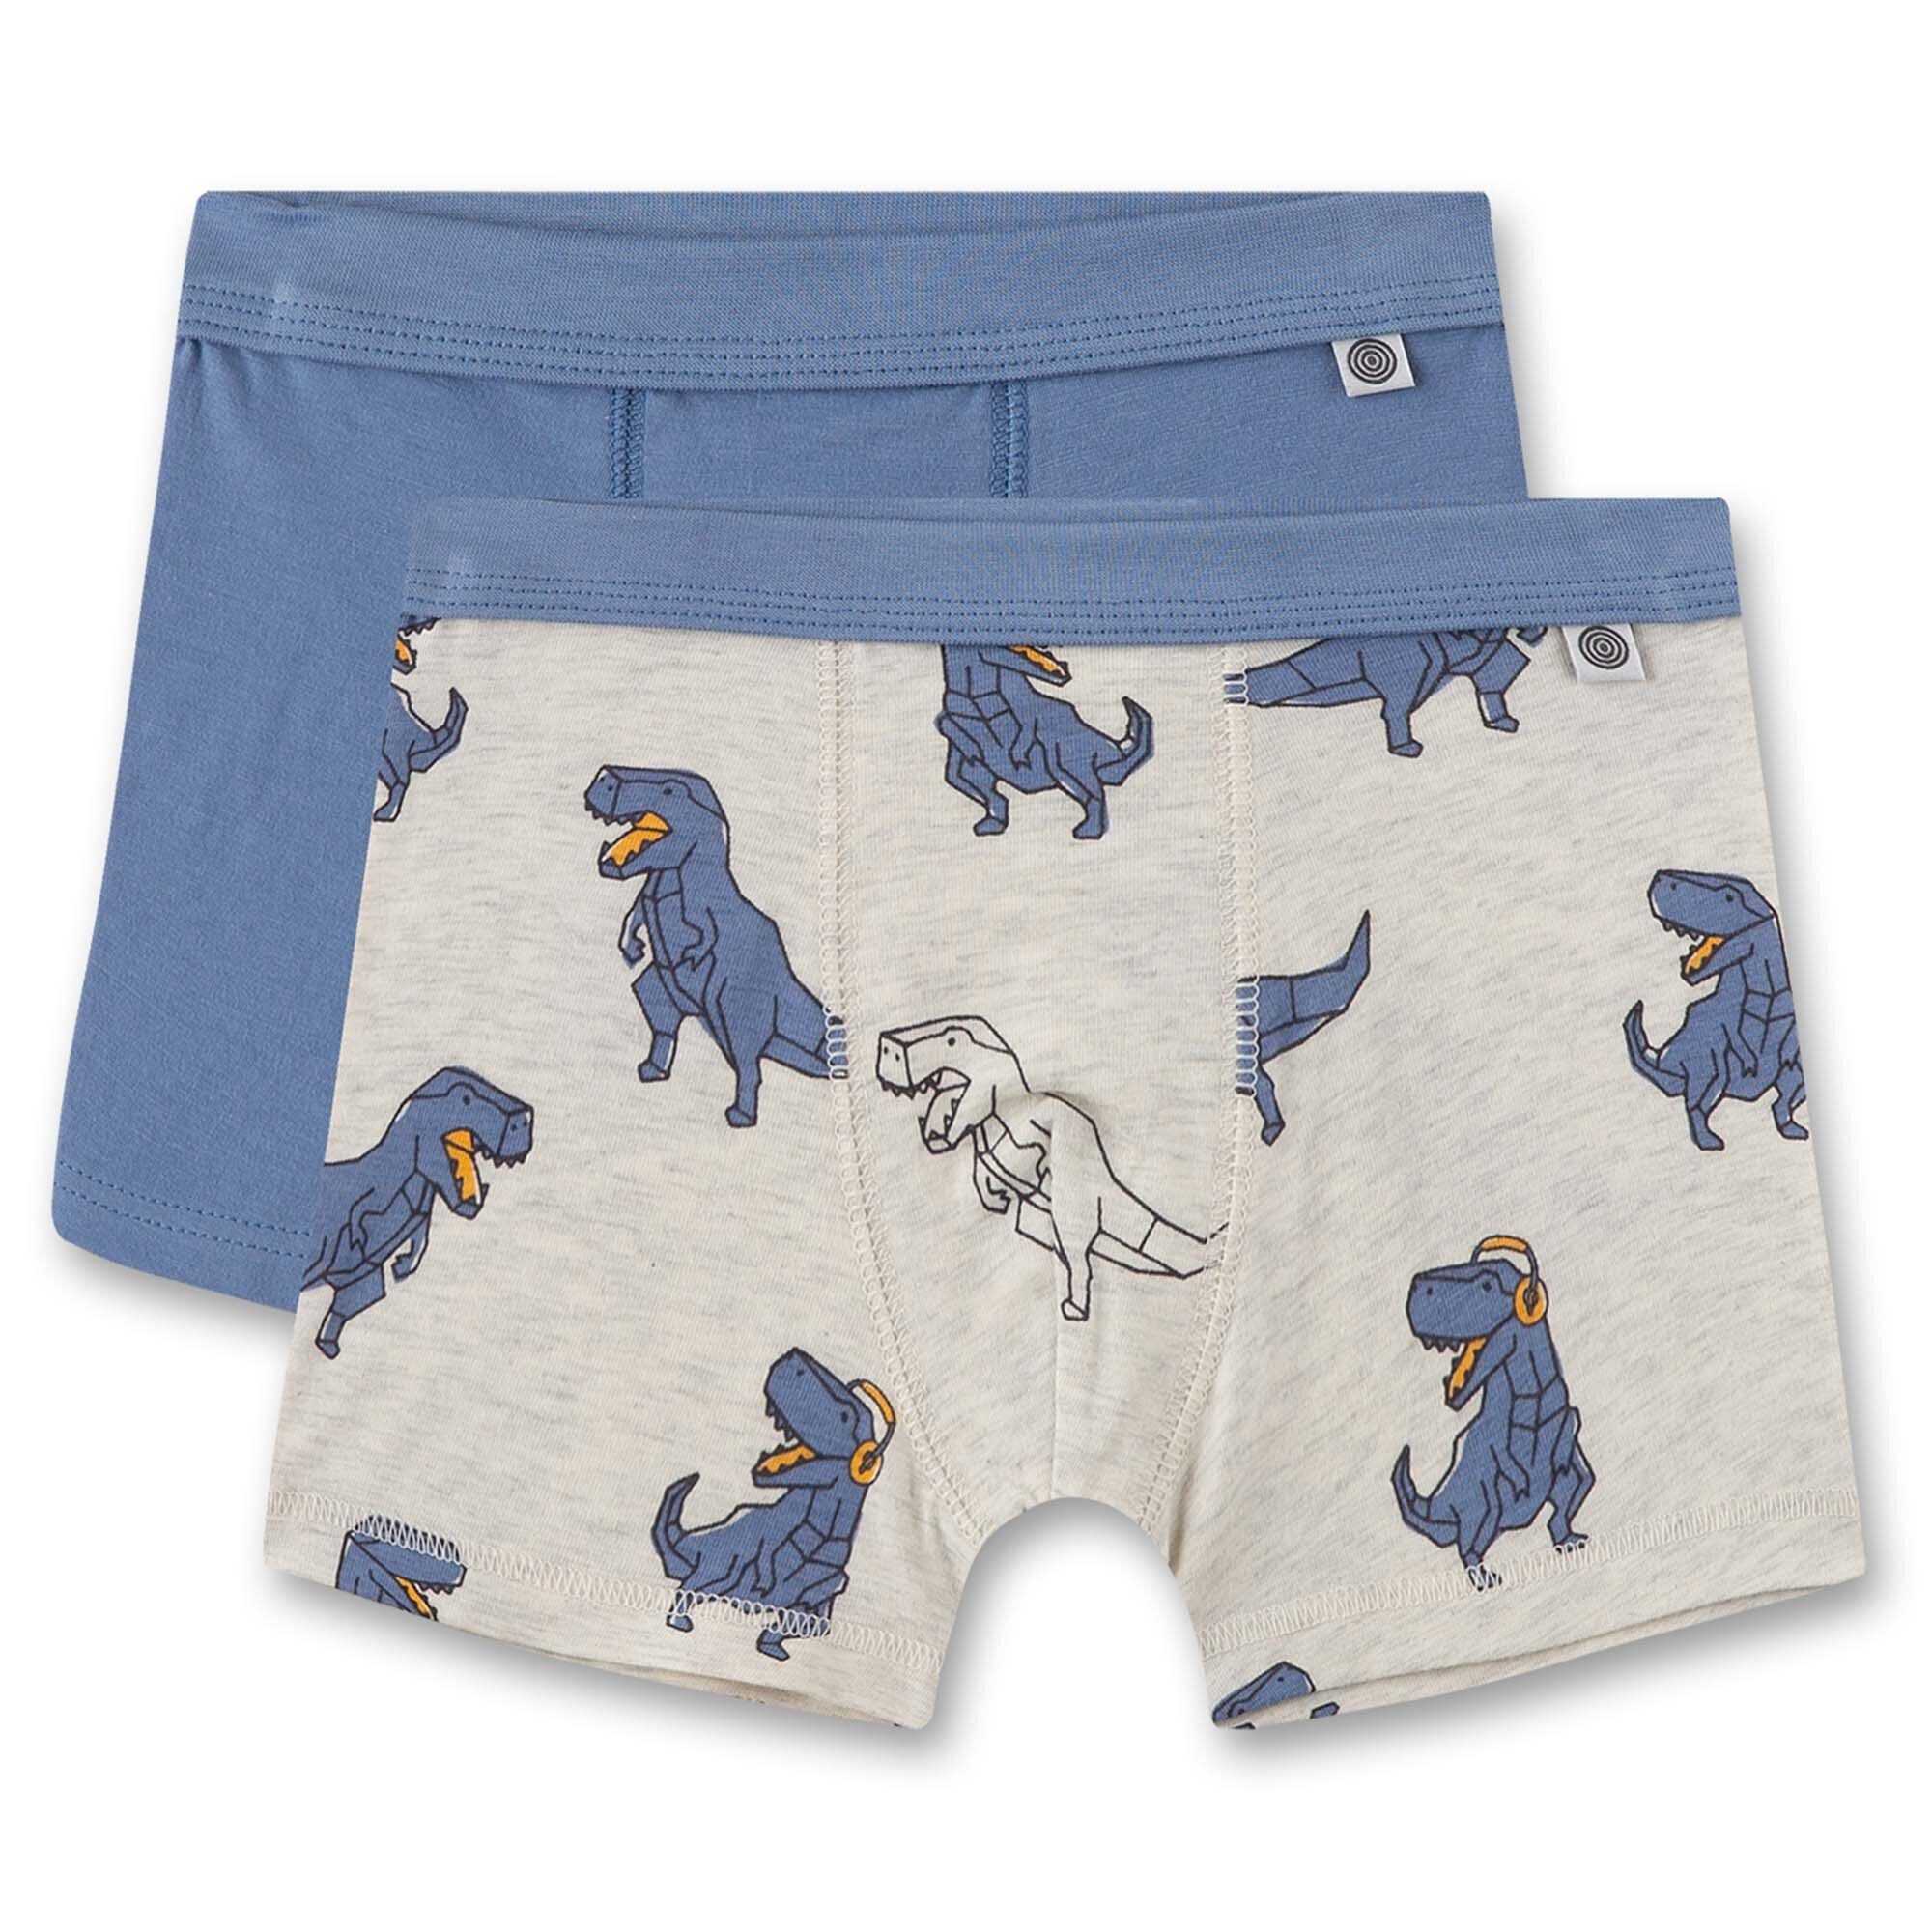 Sanetta Boxer Jungen Shorts, 2er Pack - Pants, Unterhosen